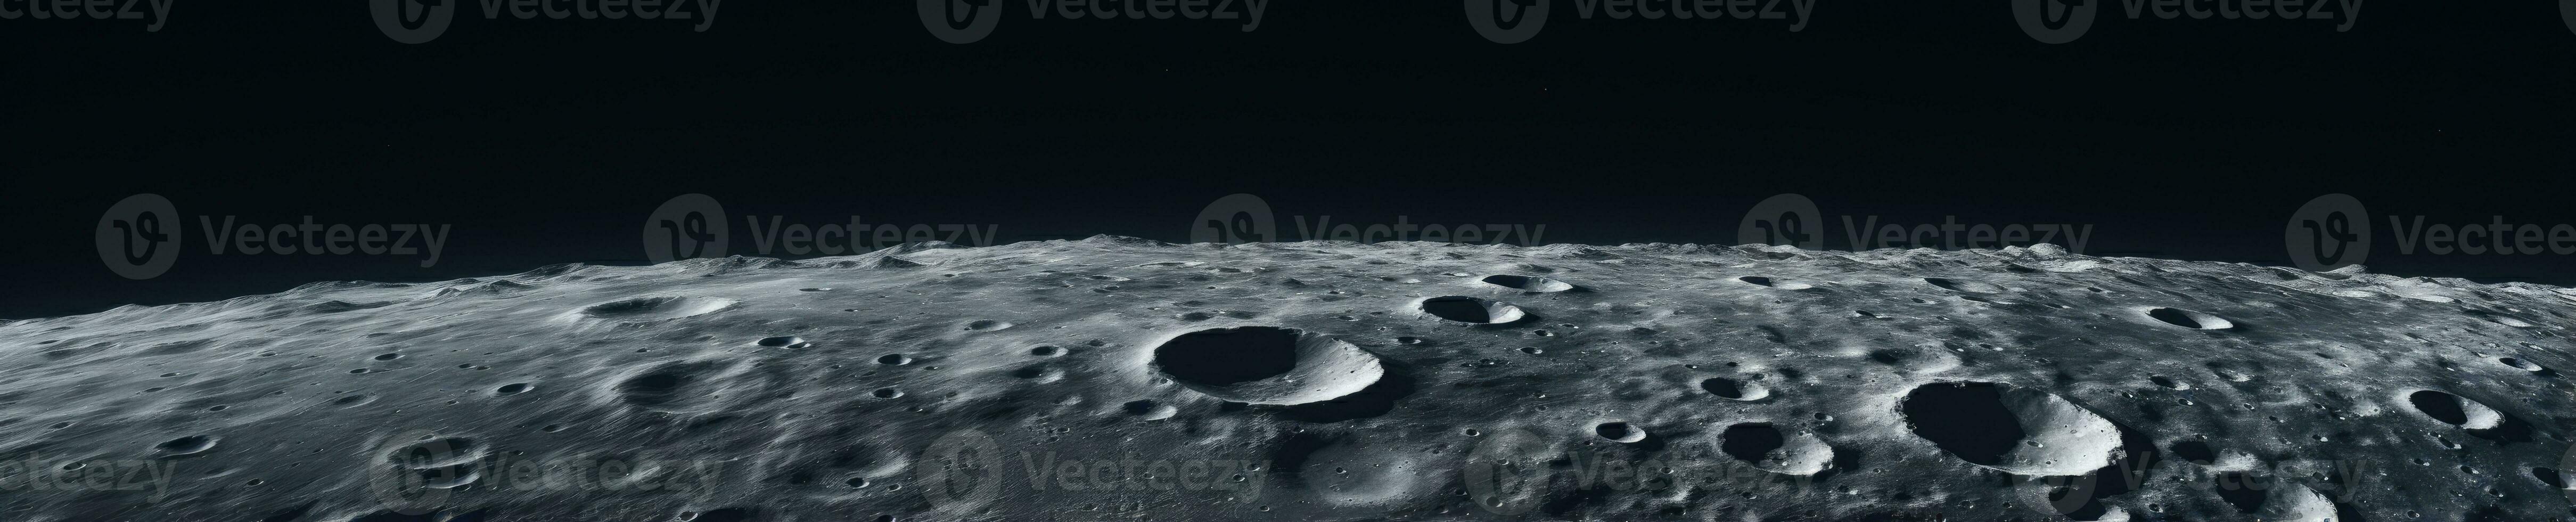 boeiend detailopname van de maan getextureerde oppervlak, onthullend rotsachtig kraters en golvend terrein. ai generatief. foto